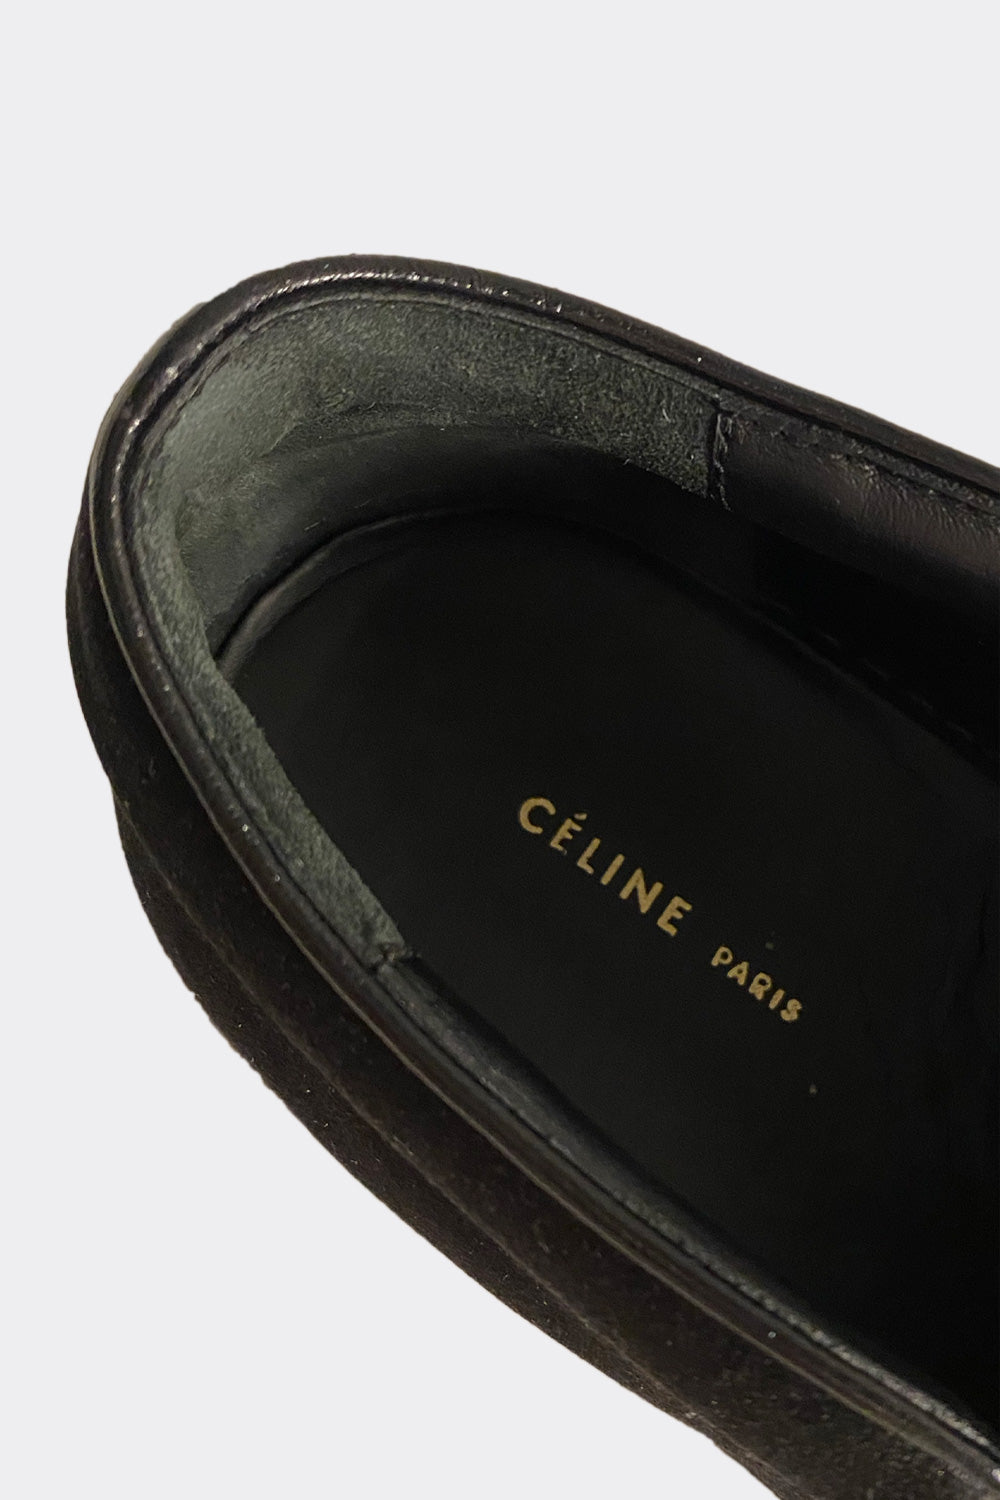 Celine Satin Sneakers Size 40 (UK7)